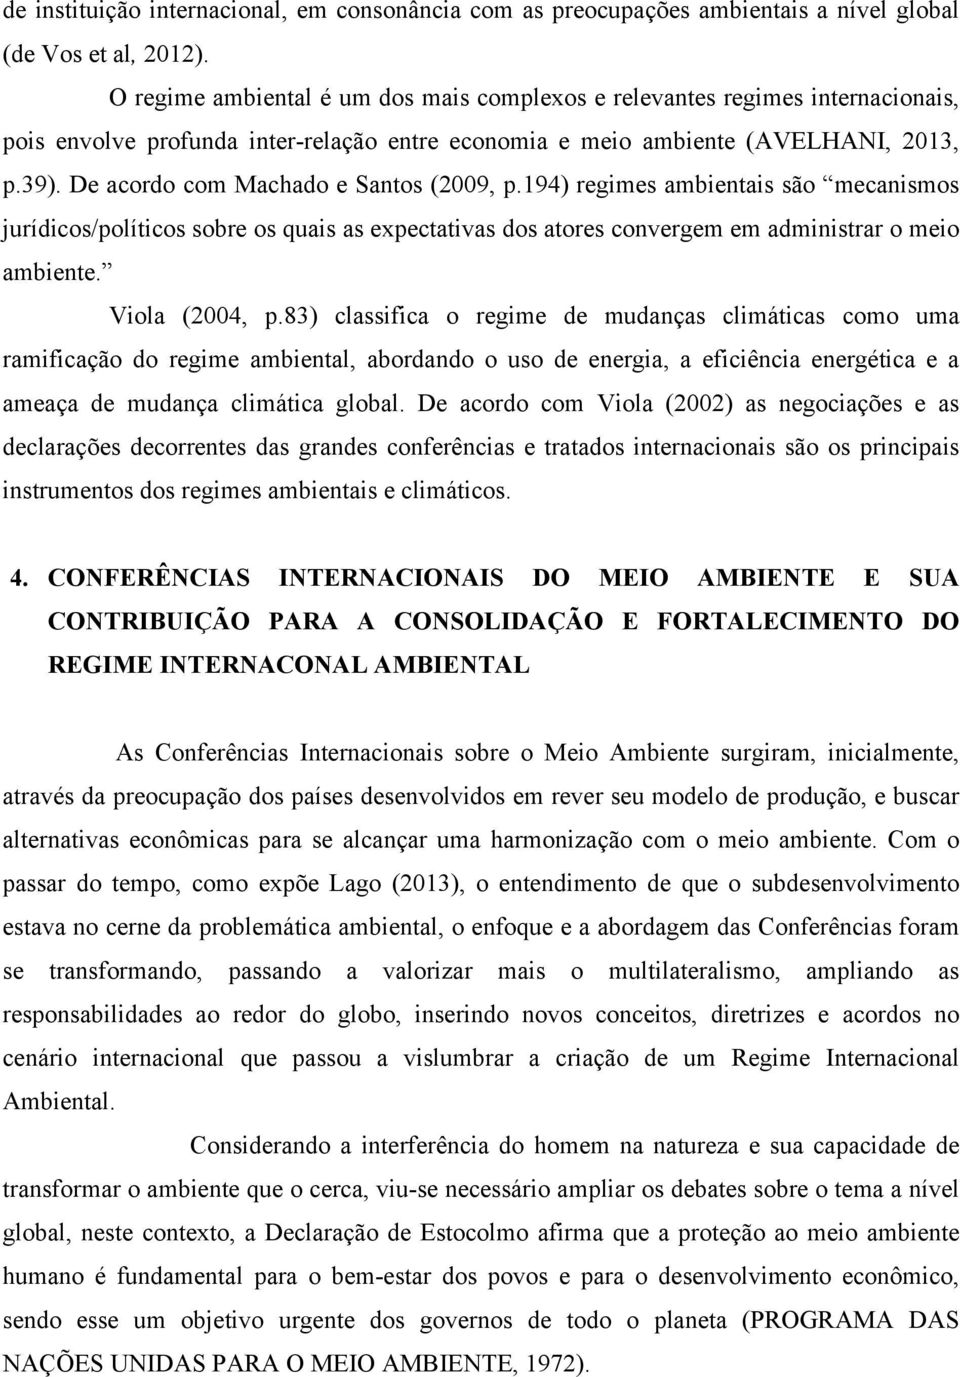 De acordo com Machado e Santos (2009, p.194) regimes ambientais são mecanismos jurídicos/políticos sobre os quais as expectativas dos atores convergem em administrar o meio ambiente. Viola (2004, p.